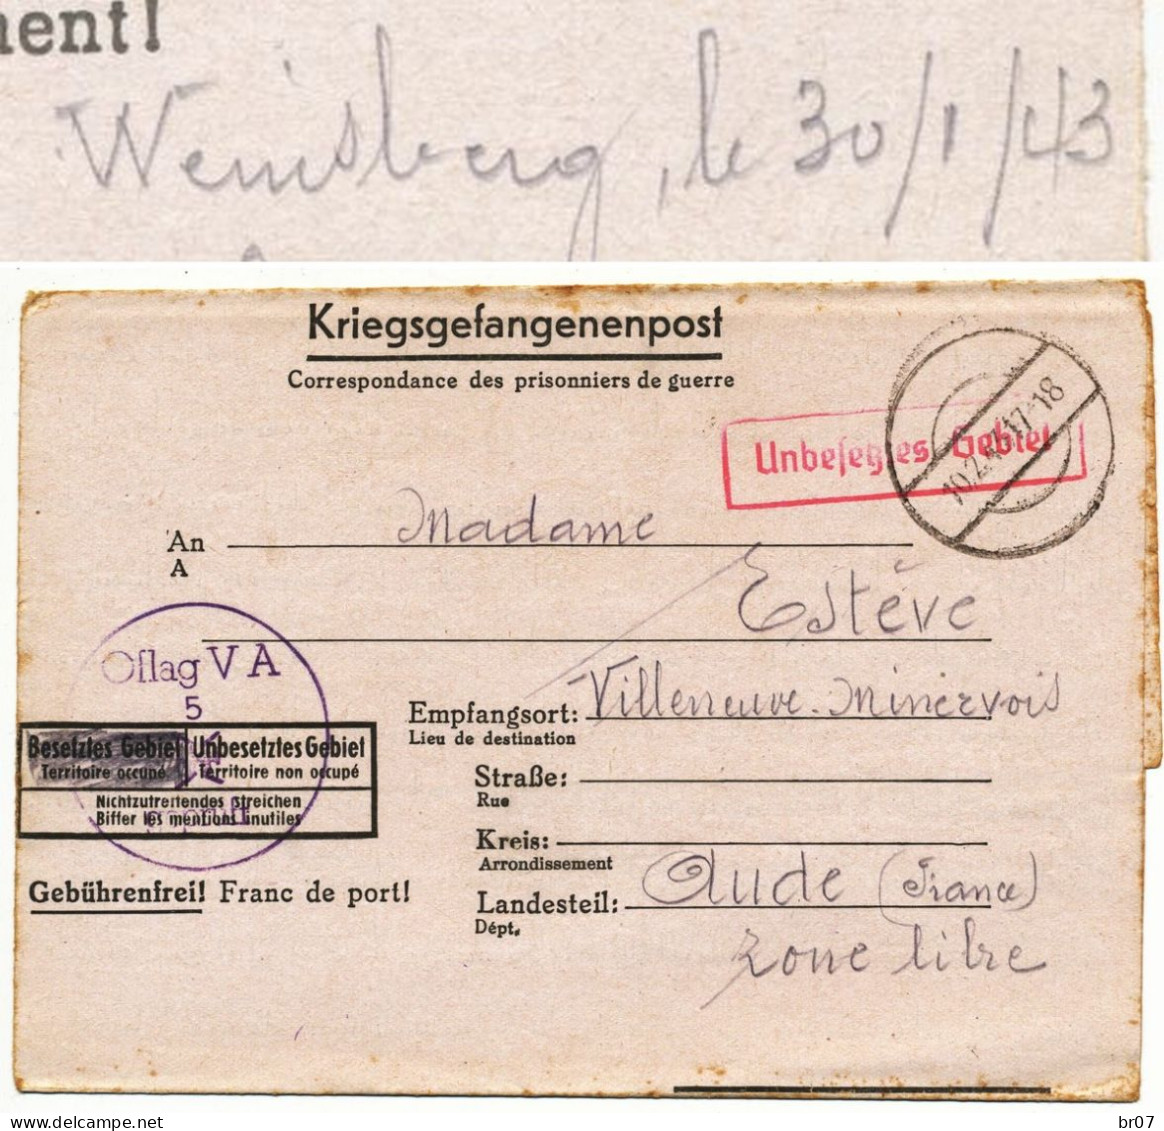 CAMP OFFICIERS PRISONNIERS ALLEMAGNE OFLAG VA 1943 = WEINSBERG STUTTGART VOIR SCANS - Guerre De 1939-45